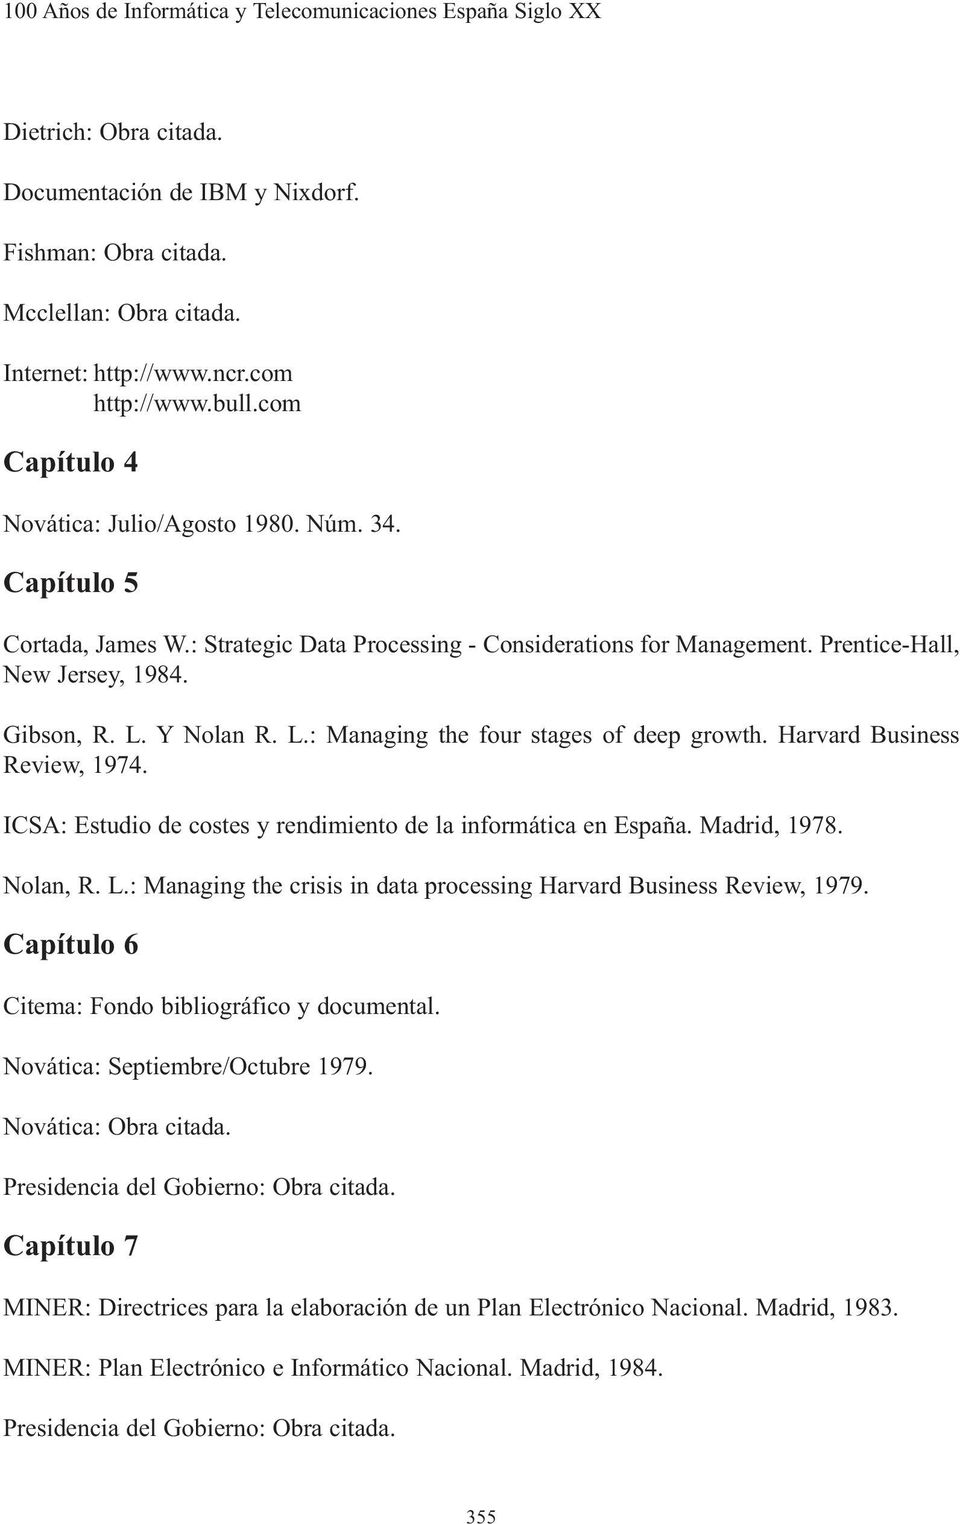 Gibson, R. L. Y Nolan R. L.: Managing the four stages of deep growth. Harvard Business Review, 1974. ICSA: Estudio de costes y rendimiento de la informática en España. Madrid, 1978. Nolan, R. L.: Managing the crisis in data processing Harvard Business Review, 1979.